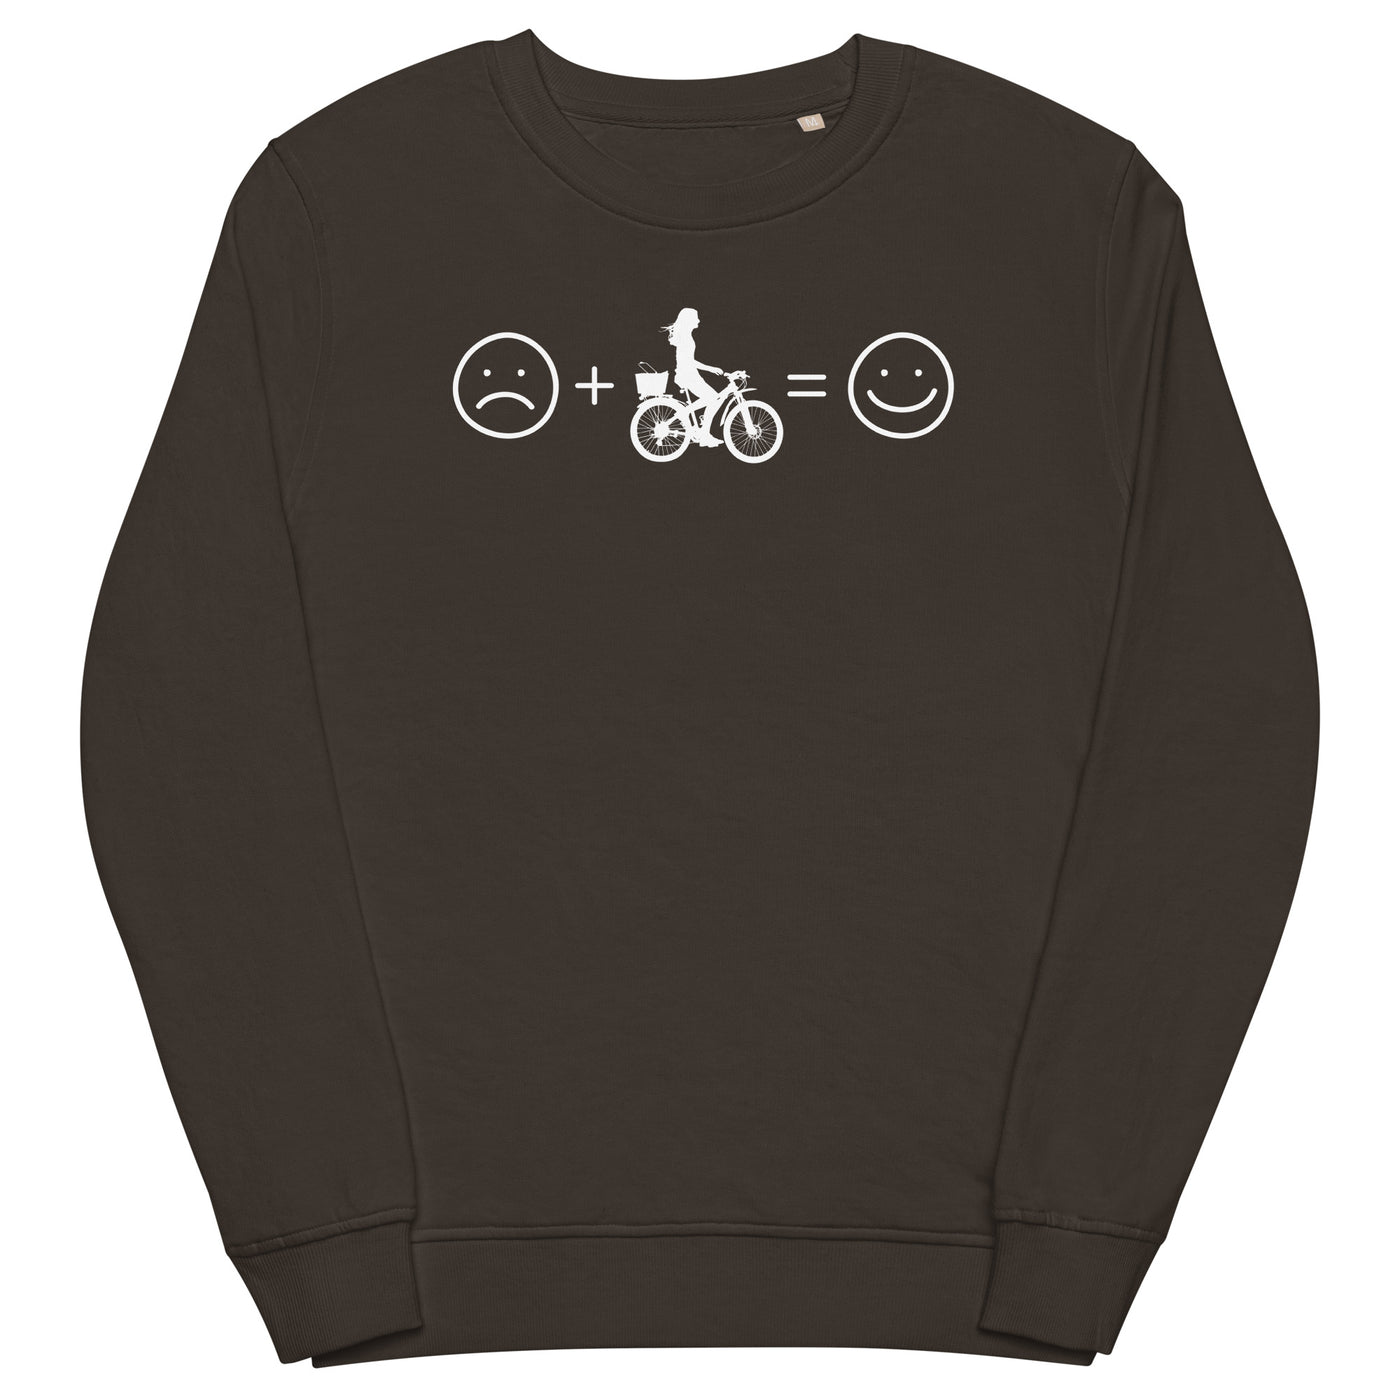 Lächelndes Gesicht und Radfahren - Unisex Premium Organic Sweatshirt fahrrad xxx yyy zzz Deep Charcoal Grey